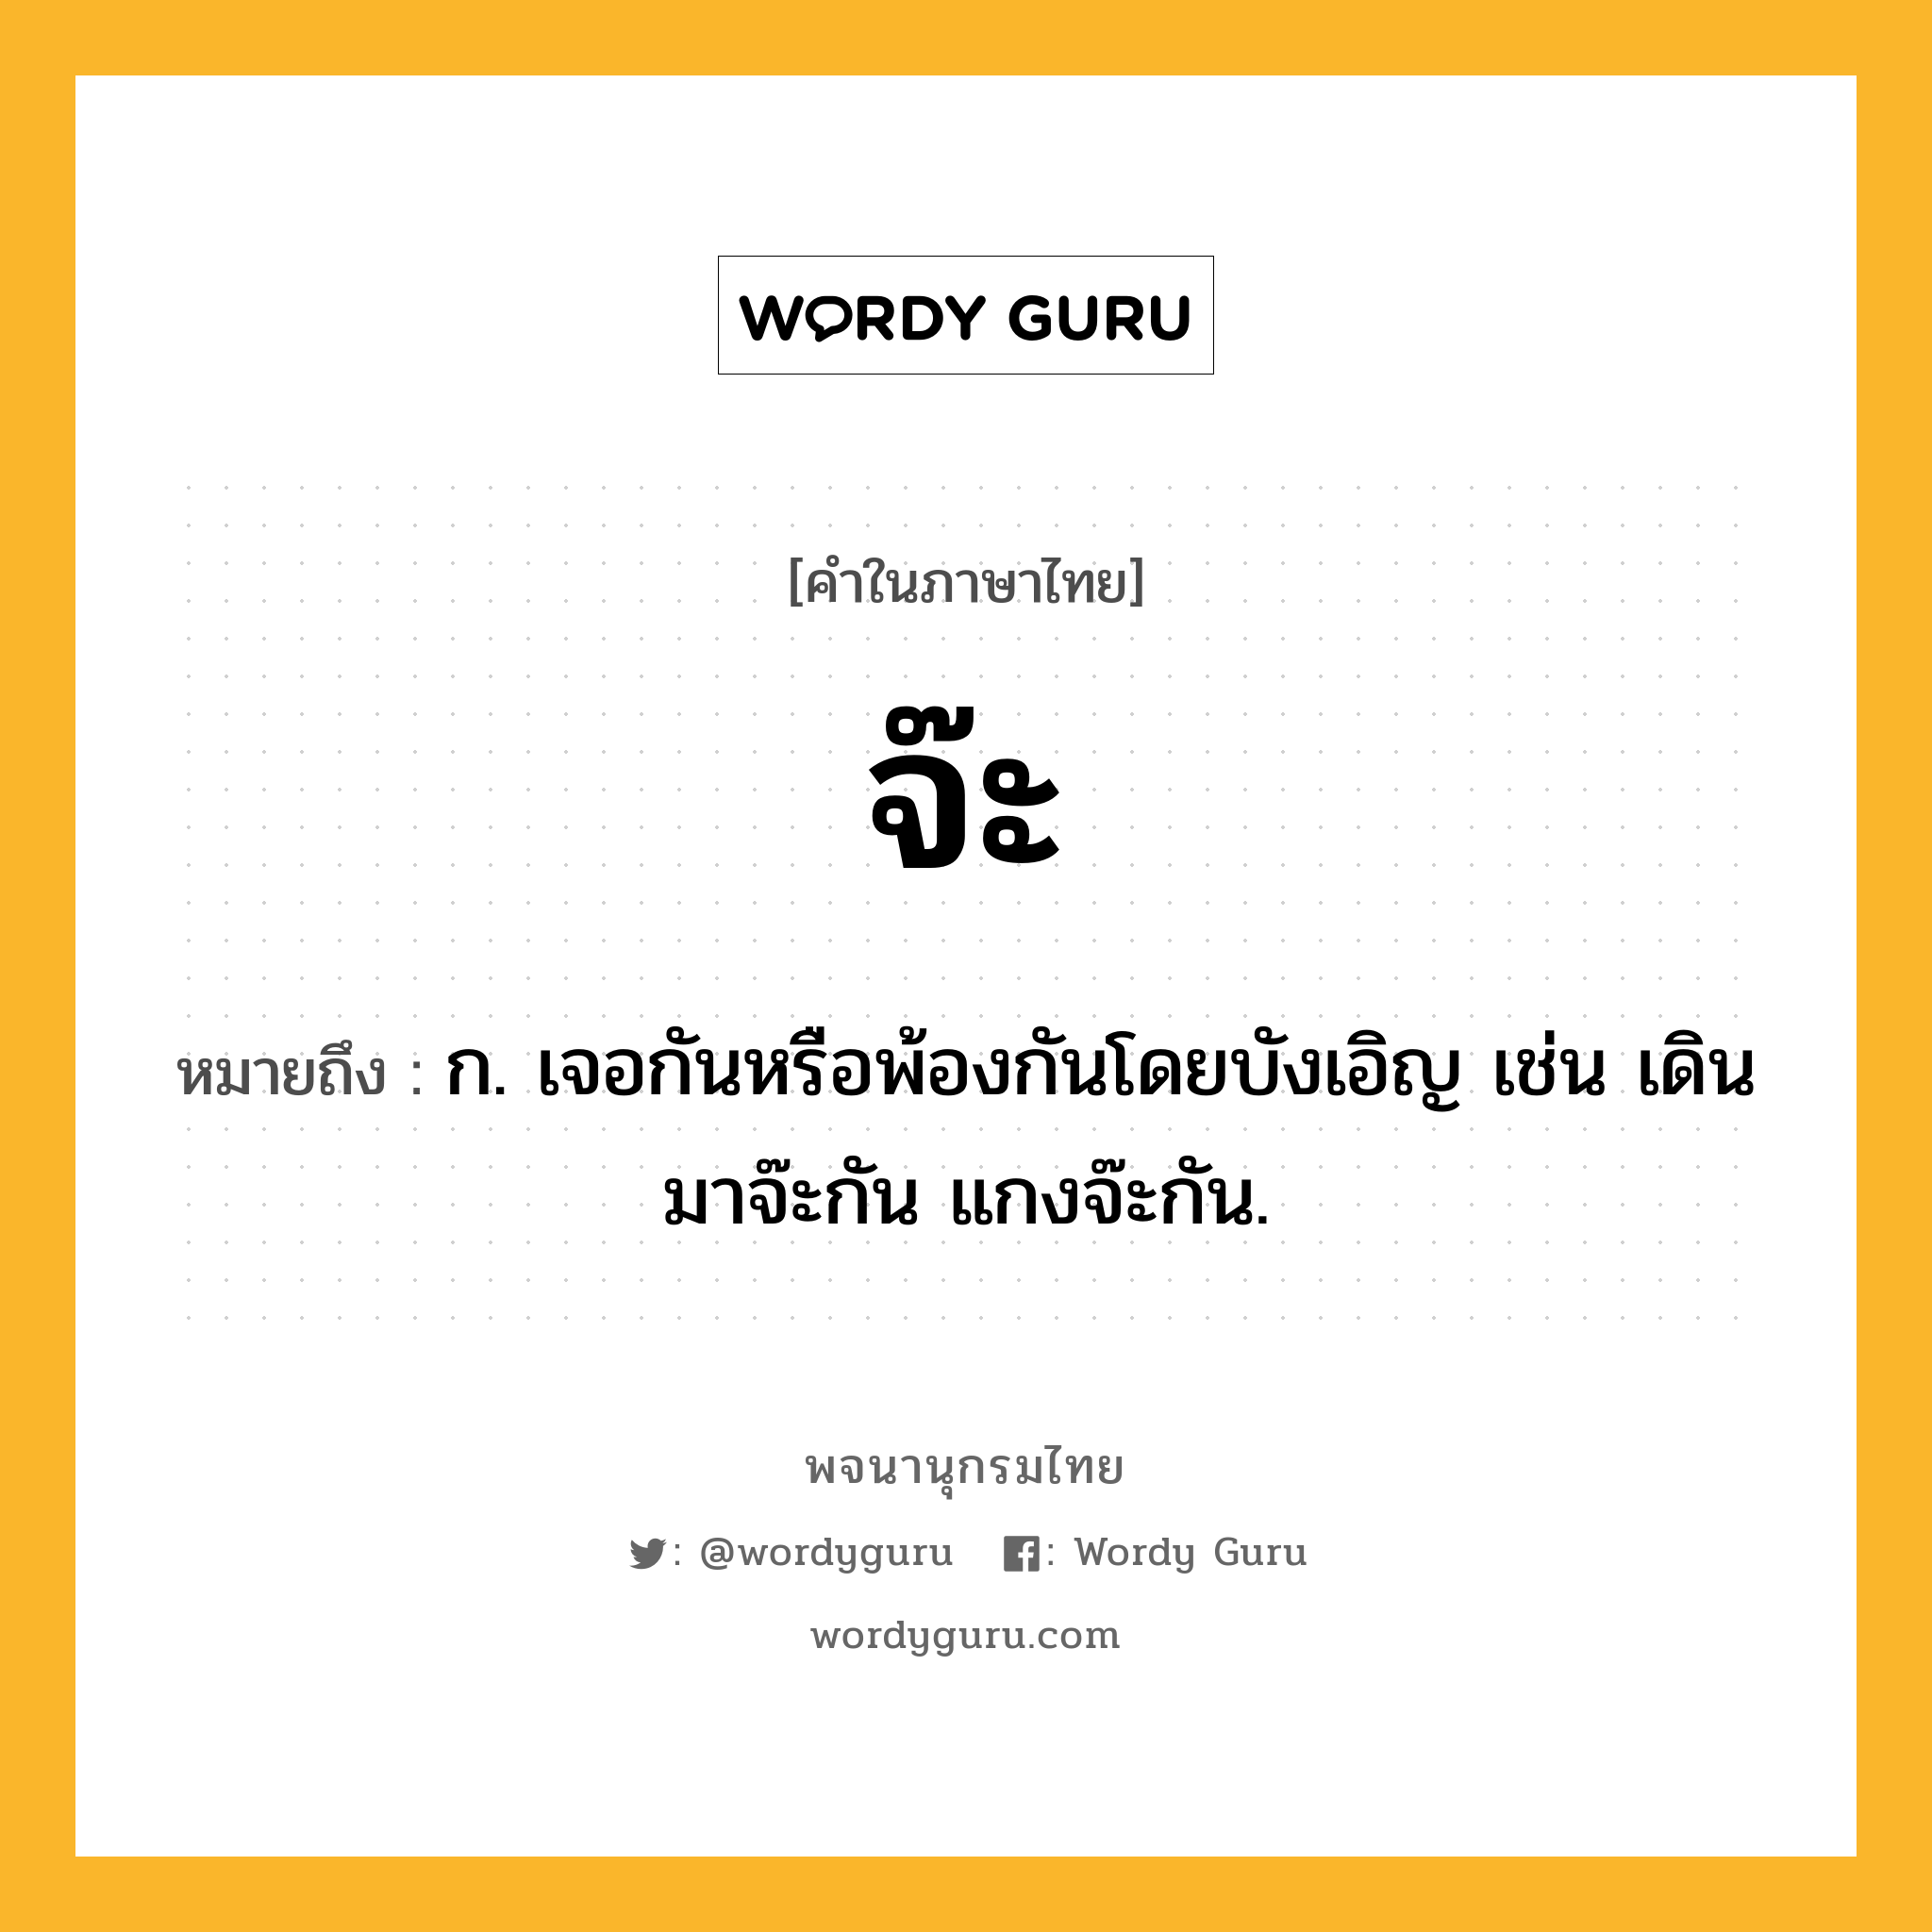 จ๊ะ ความหมาย หมายถึงอะไร?, คำในภาษาไทย จ๊ะ หมายถึง ก. เจอกันหรือพ้องกันโดยบังเอิญ เช่น เดินมาจ๊ะกัน แกงจ๊ะกัน.